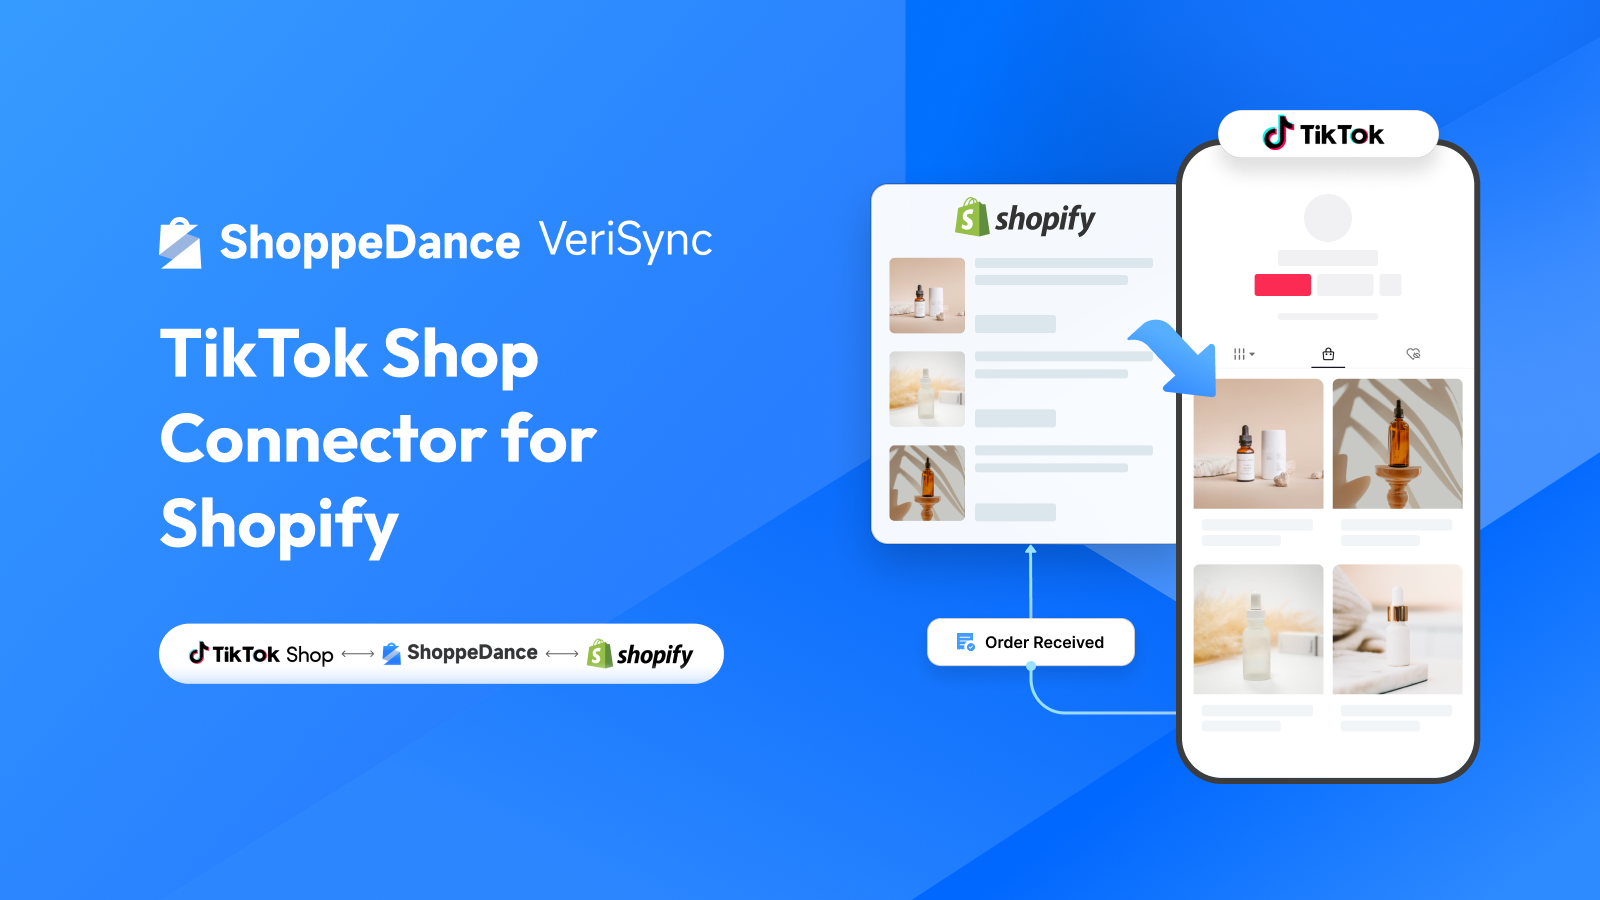 ShoppeDance VeriSync | Conector de TikTok Shop para Shopify